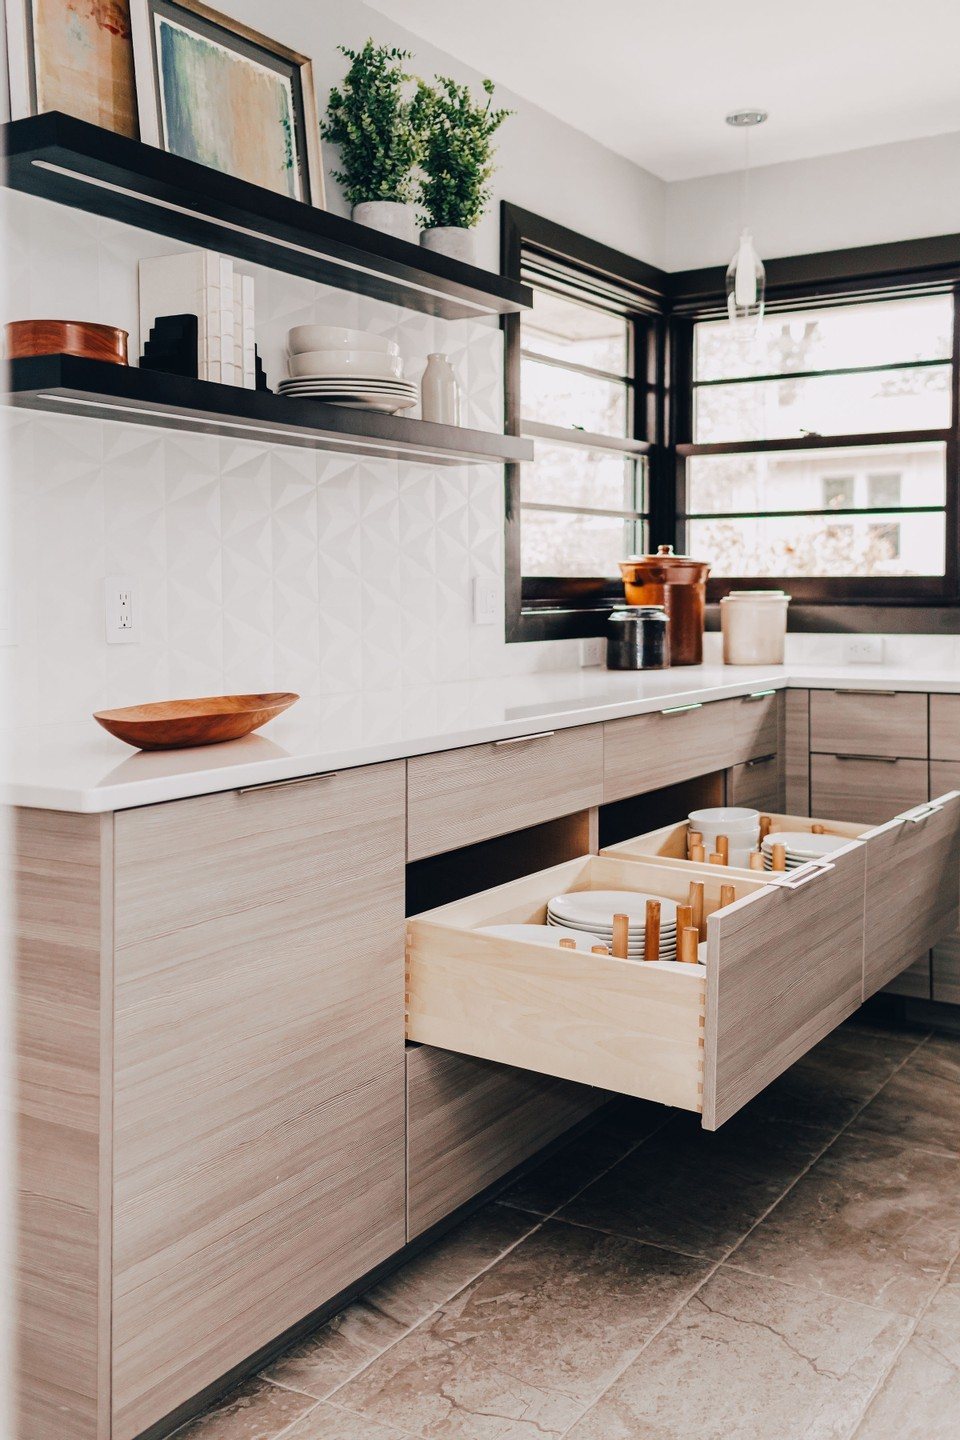 Lower drawer storage in modern kitchen design